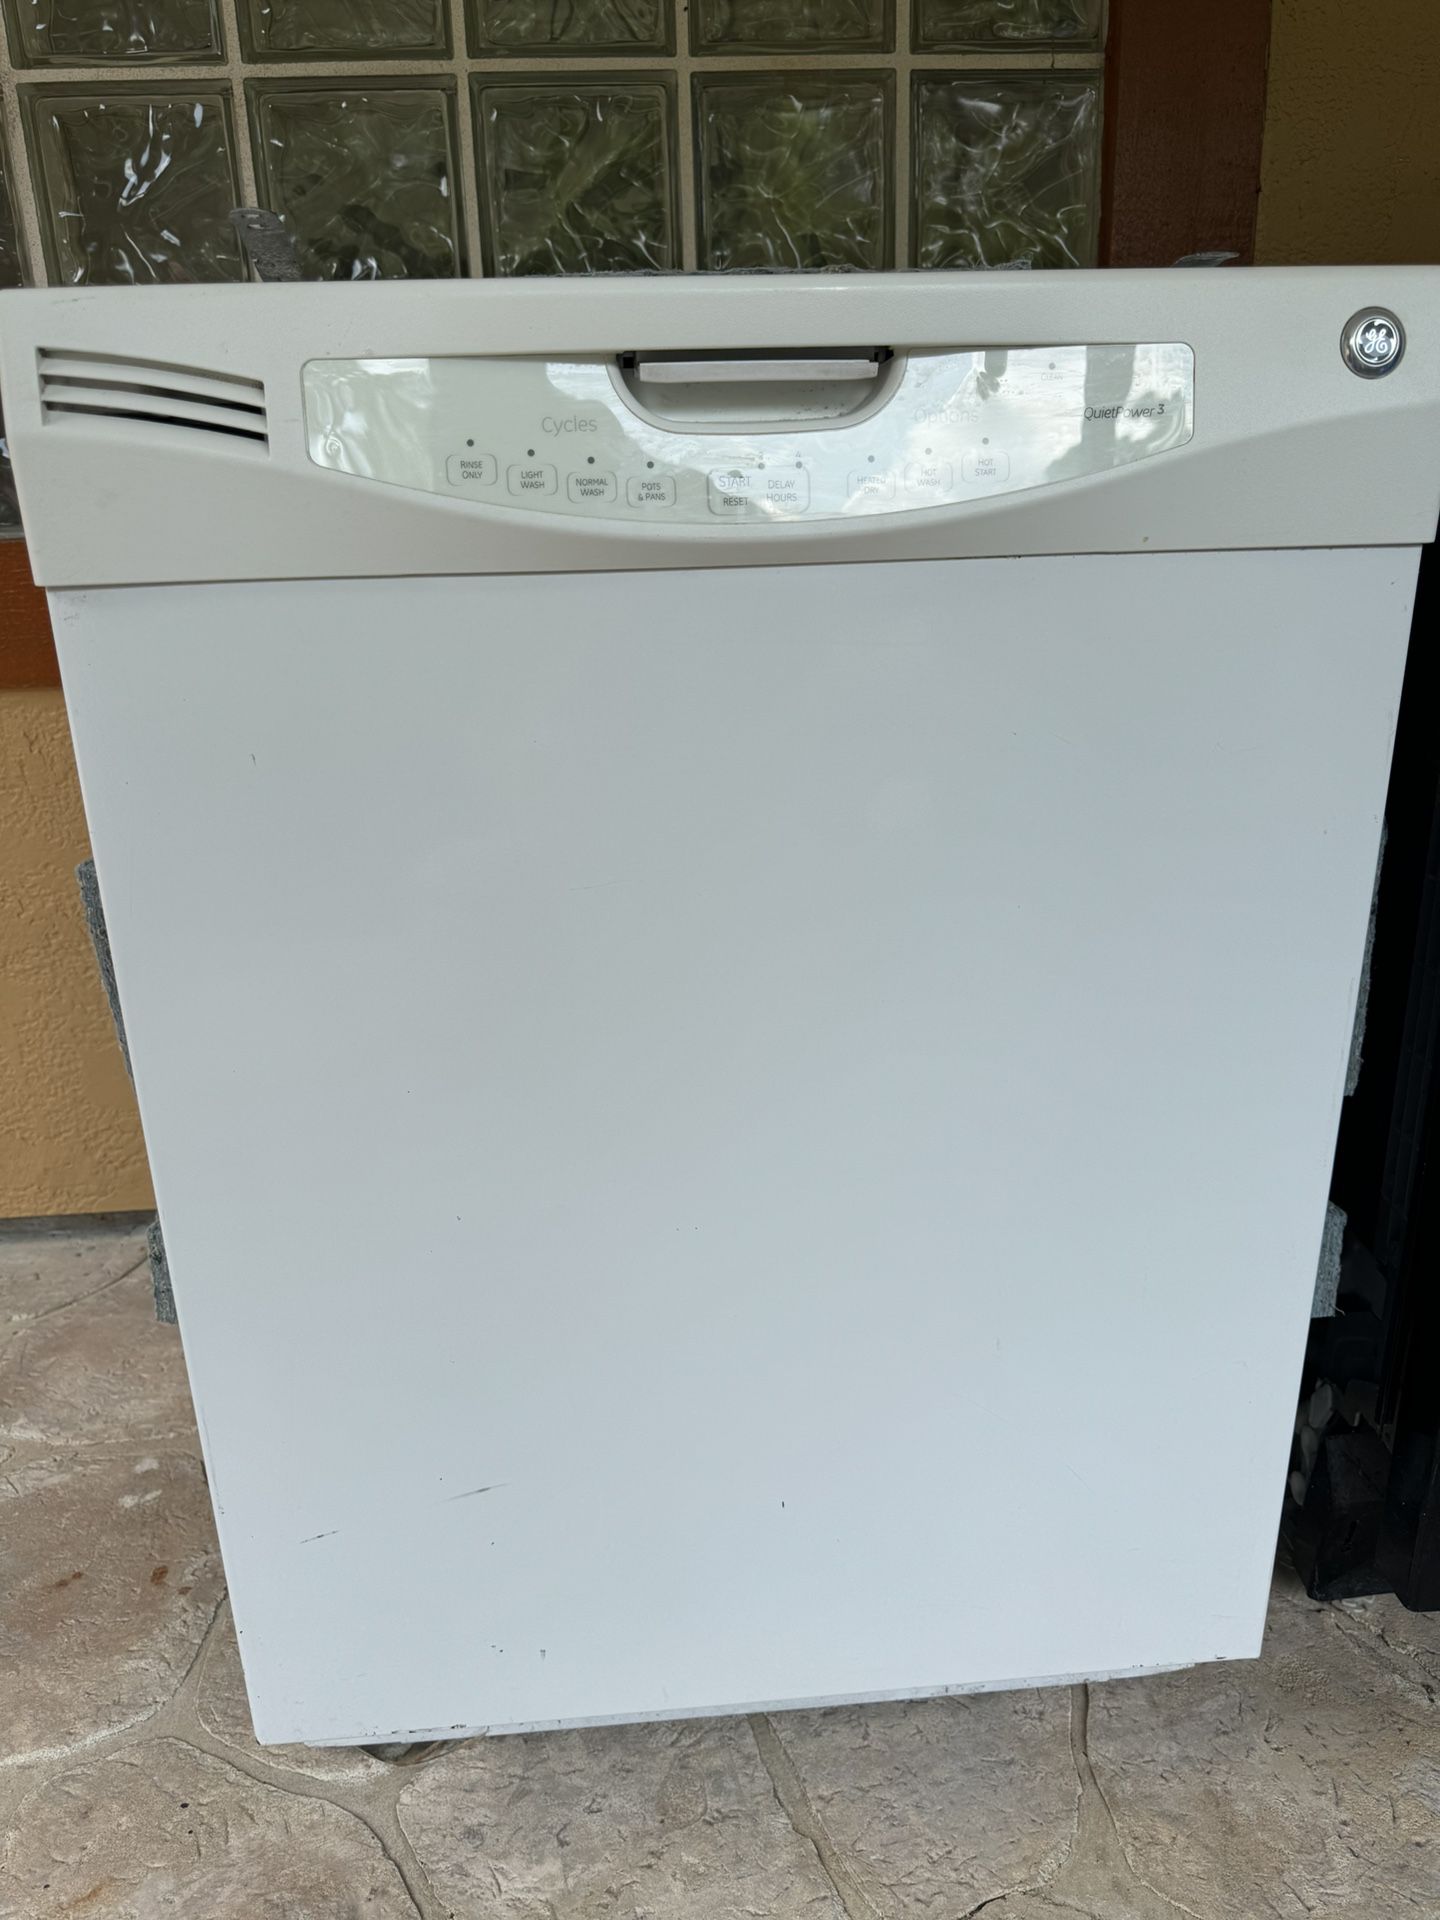 GE white dishwasher